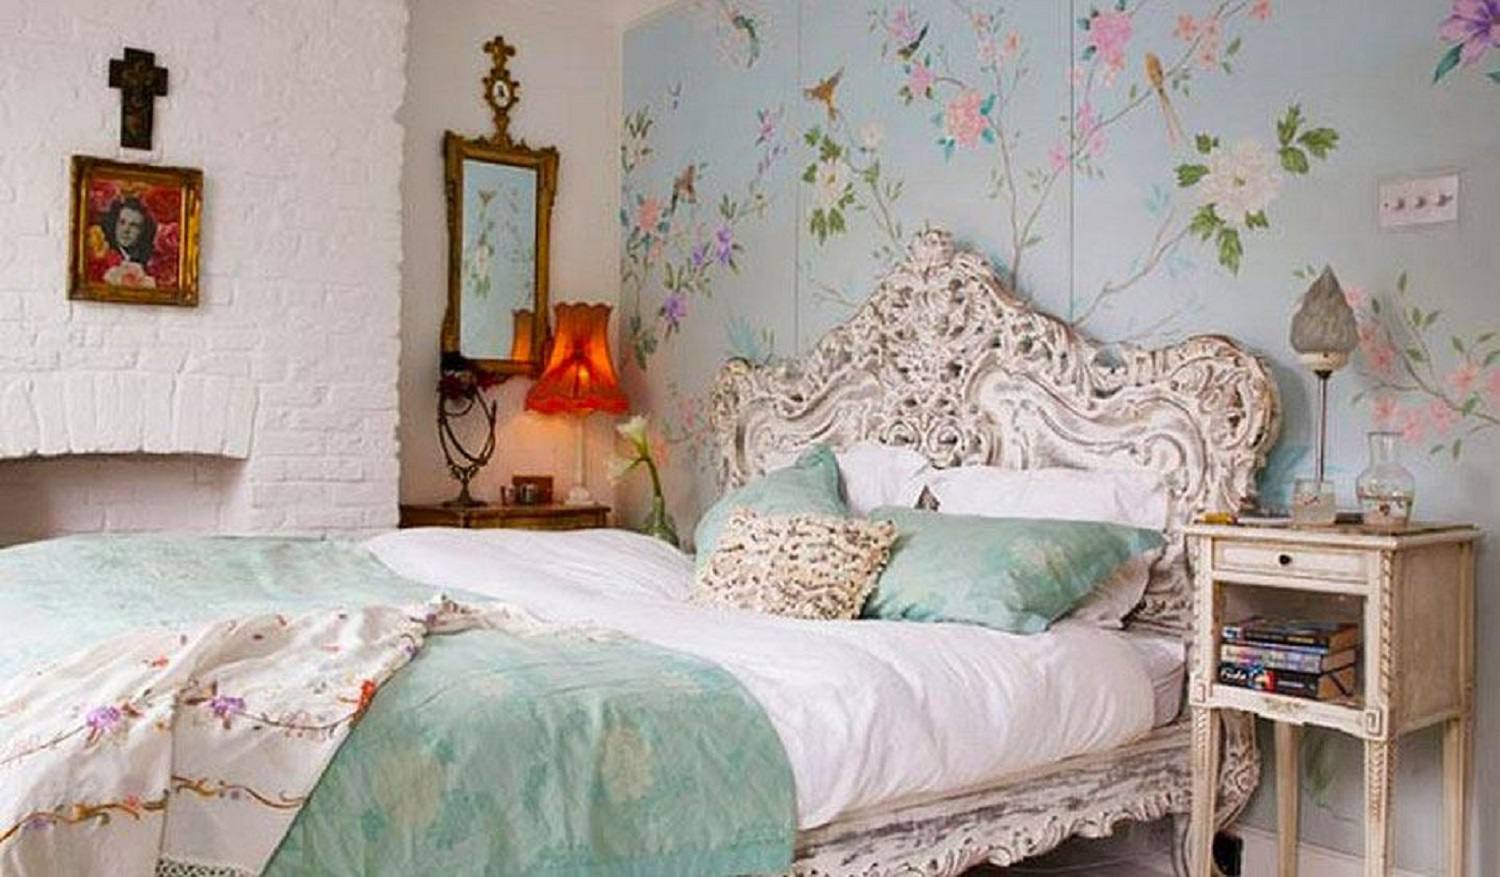 Mảng tường đầu giường dược trang trí bằng giấy dán hoa văn